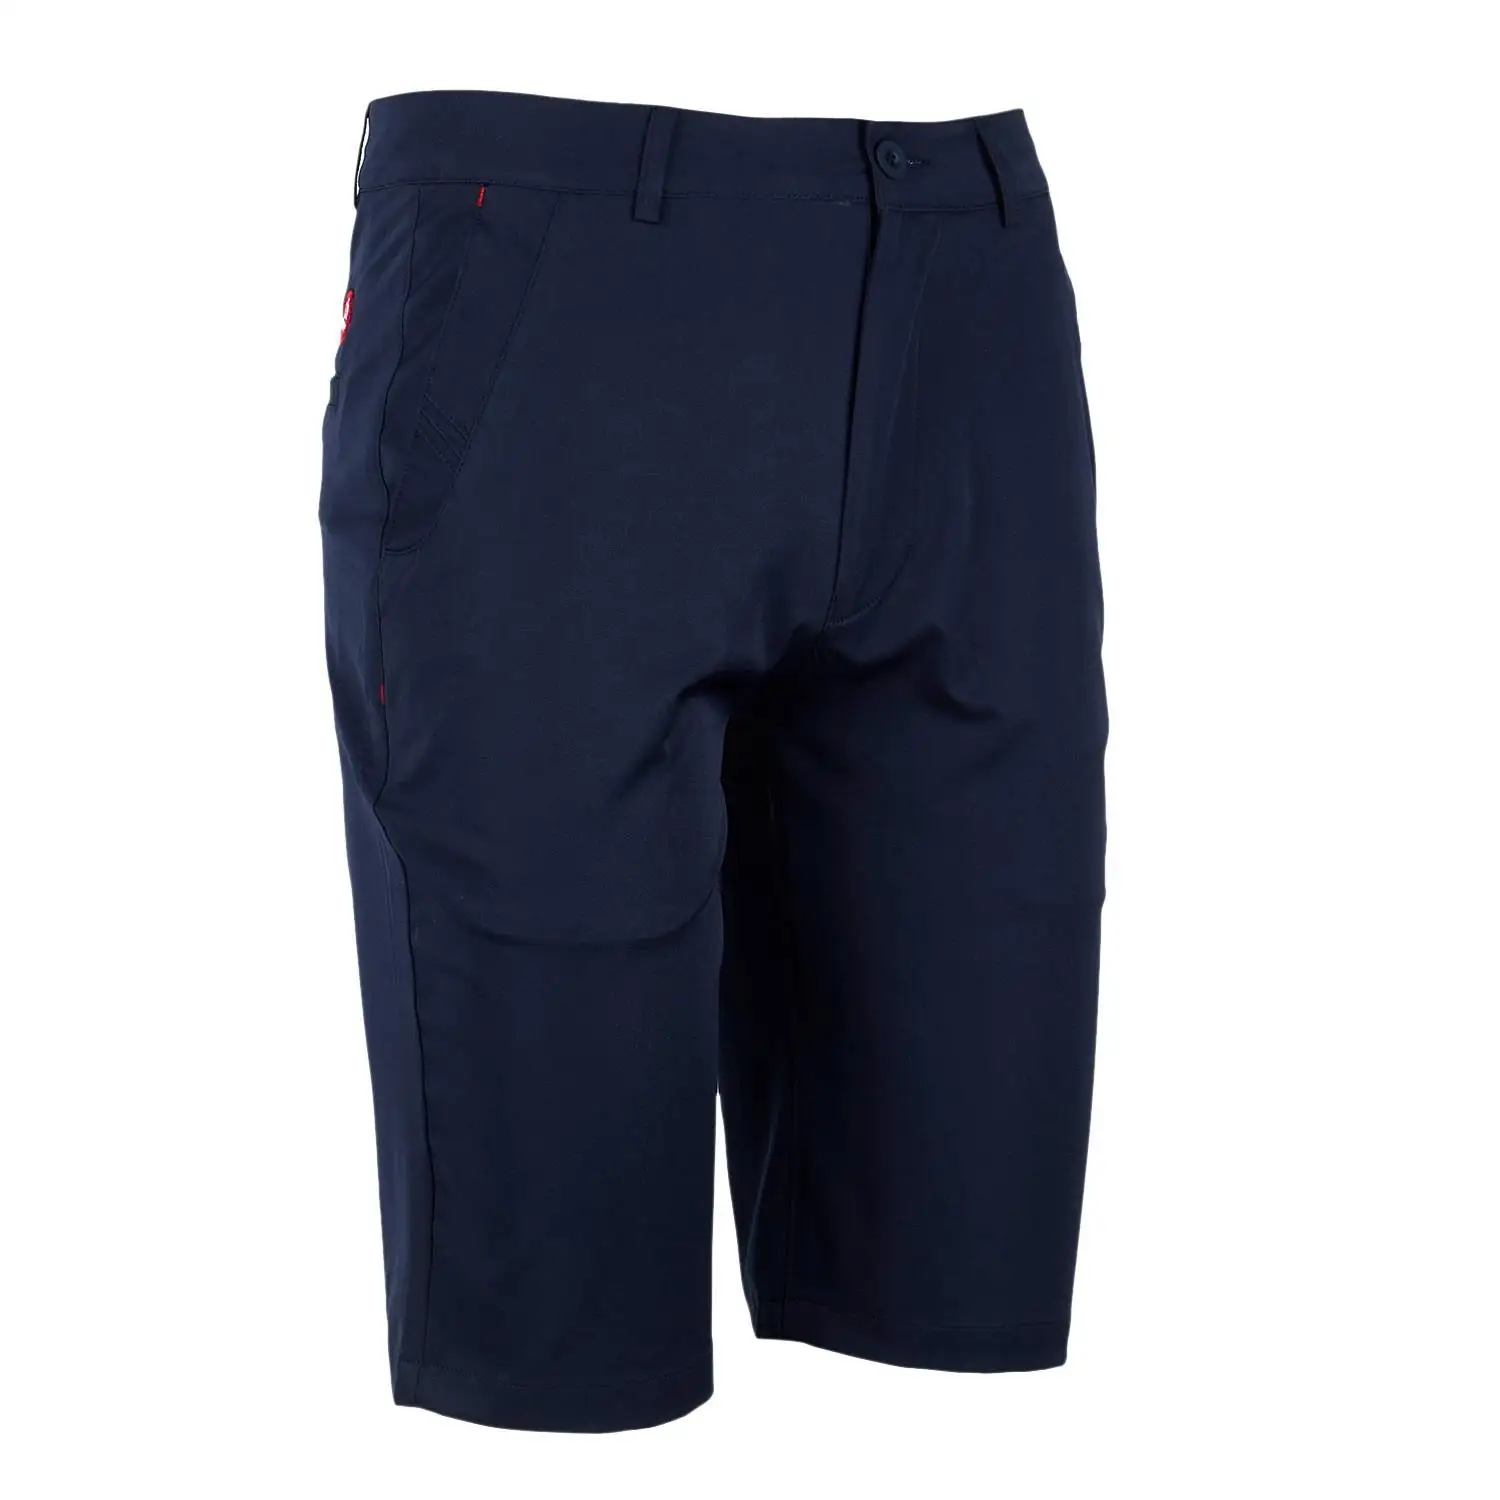 Pgm шорты для гольфа мужские спортивные шорты для гольфа летние дышащие быстросохнущие шорты